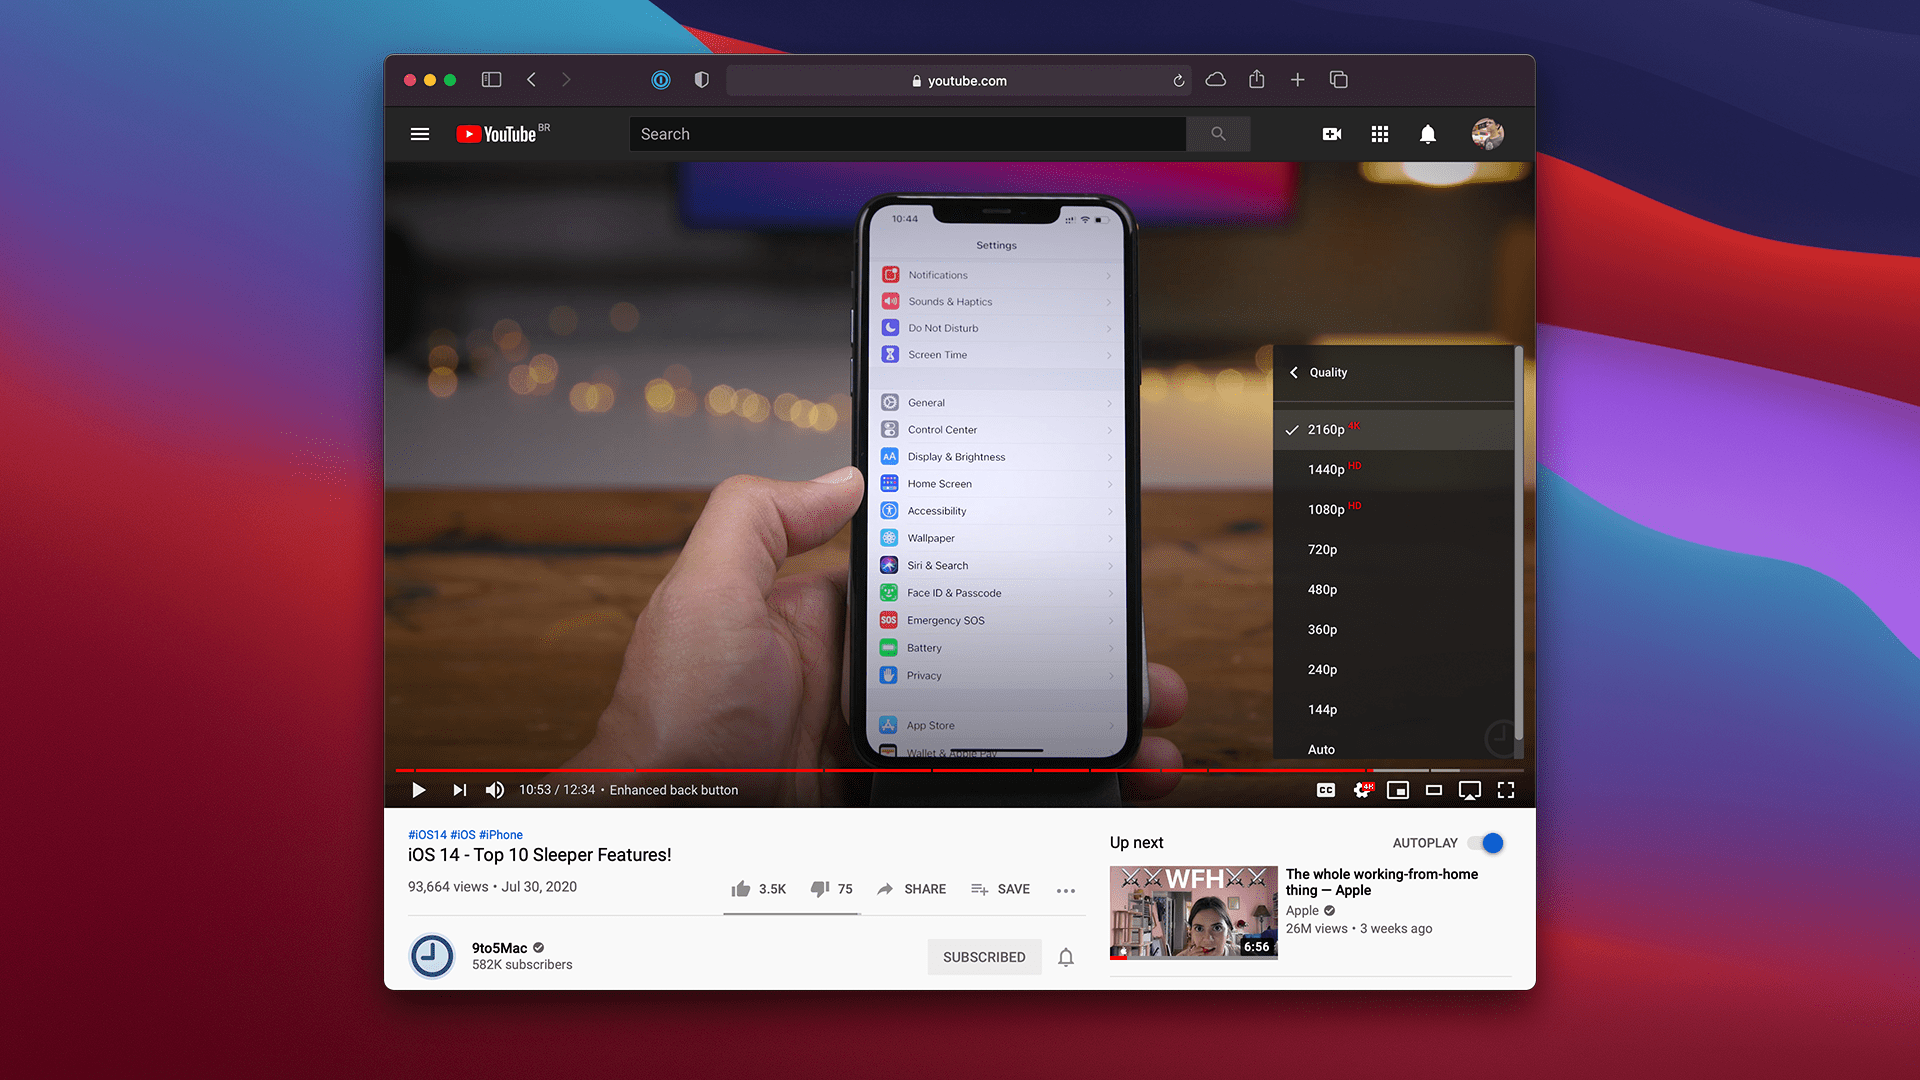 Safari trên macOS Big Sur beta 4 giờ đã hỗ trợ xem video 4K trên YouTube